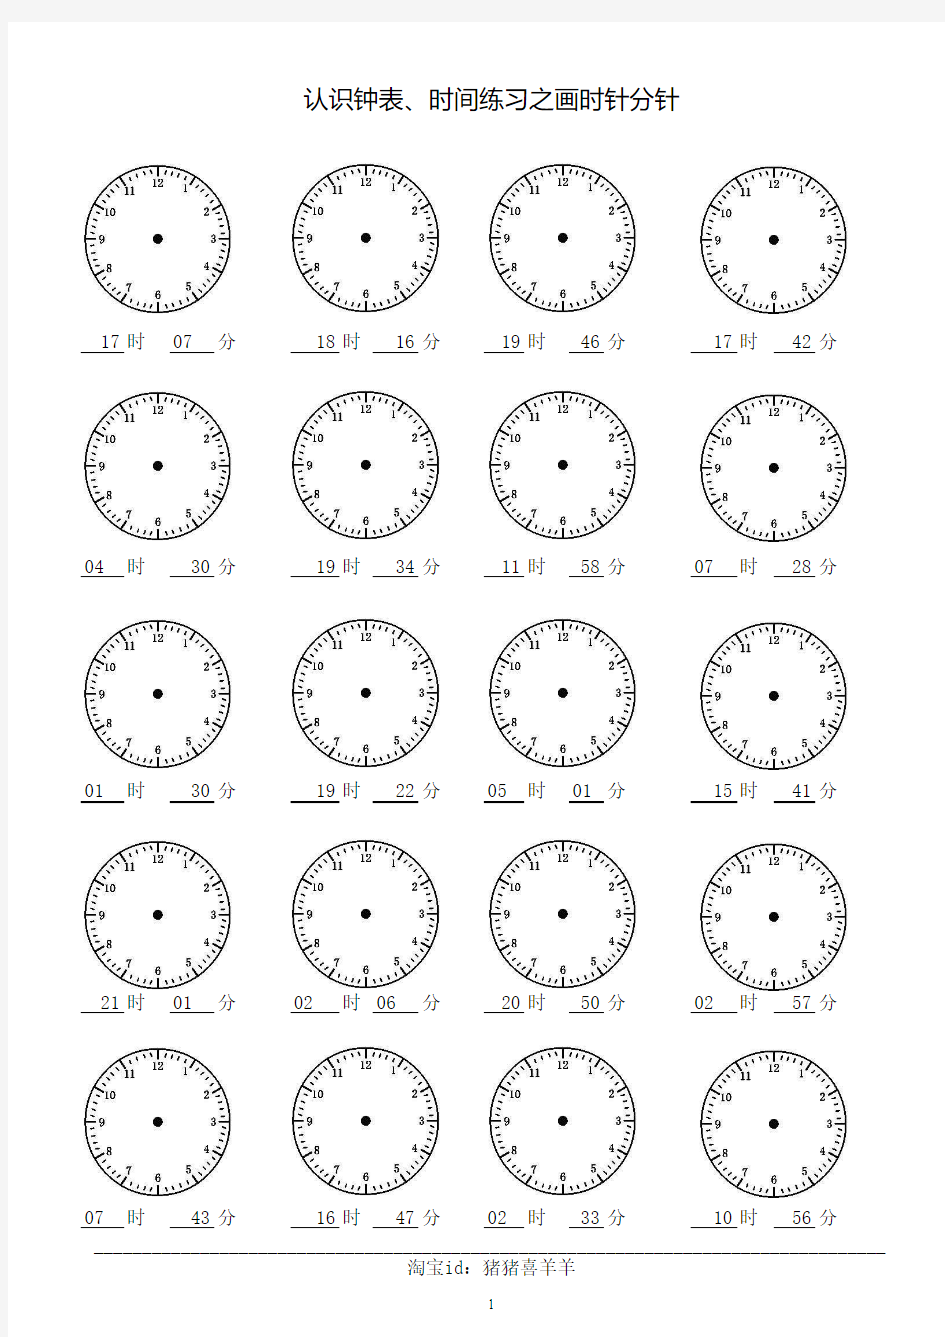 二年级认识钟表时间练习之画时针分针共60页1200题每页20道